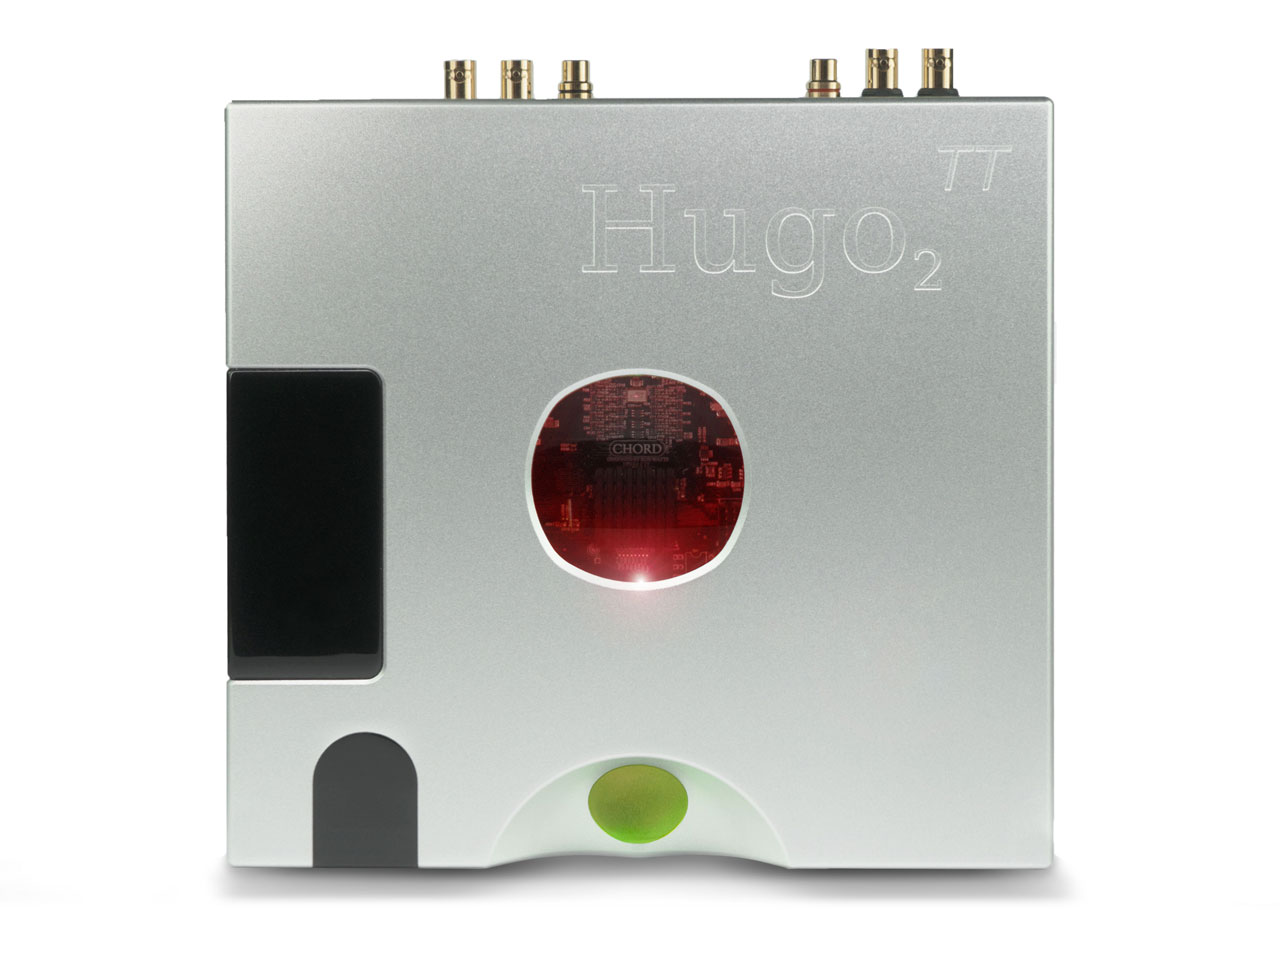 Hugo TT 2